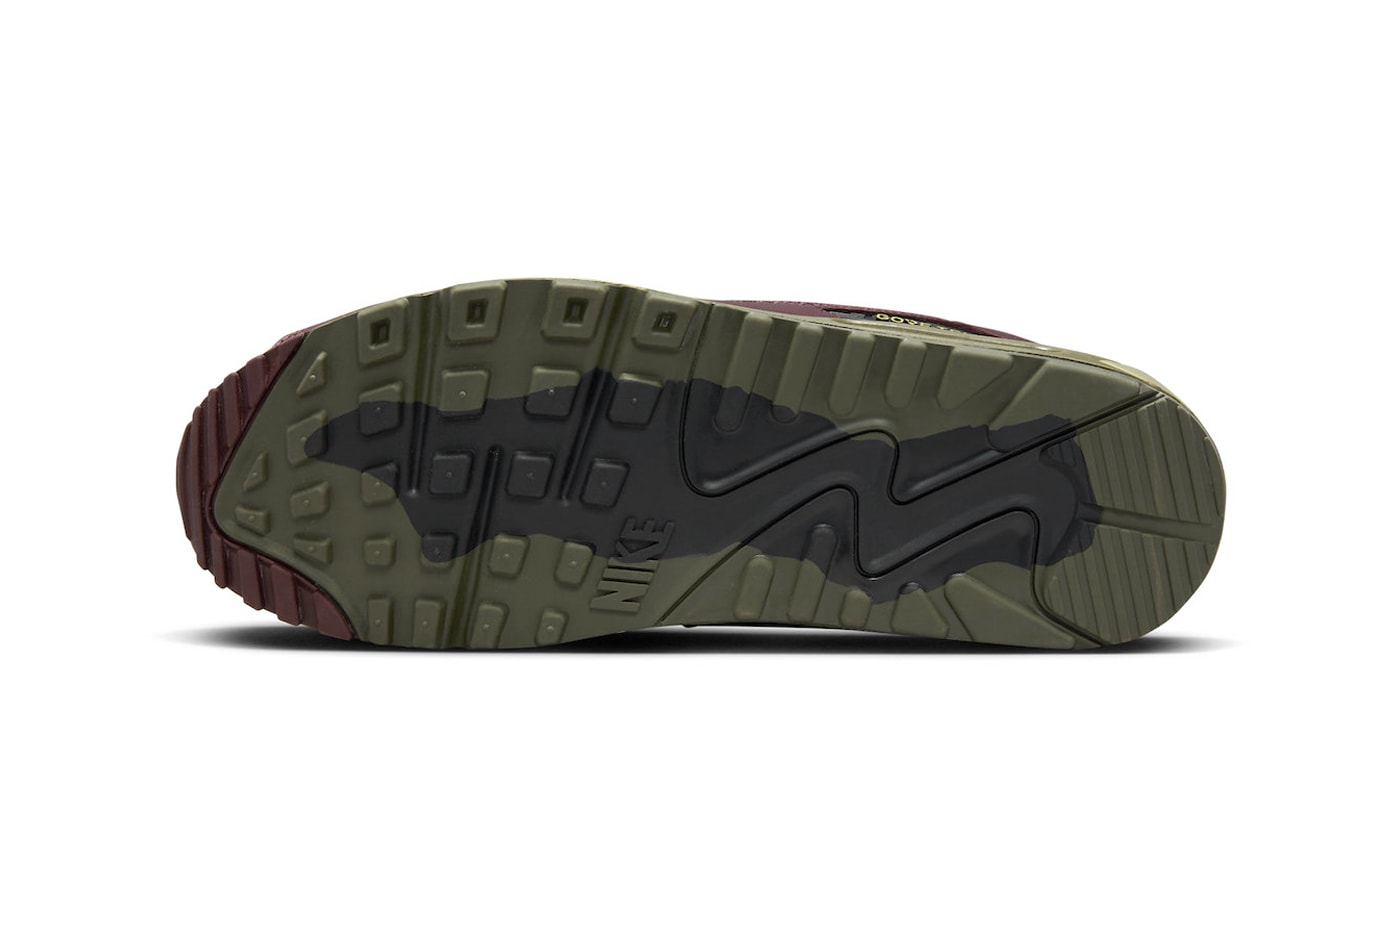 ナイキ エア マックス 90 ゴアテックス®︎からミリタリーな新作 “ミディアムオリーブ”が登場 Nike Air Max 90 Gore-Tex Arrives in "Medium Olive" FD5810-200 Medium Olive/Neutral Olive-Cargo Khaki swoosh shoes technical multi purpose weather shoes